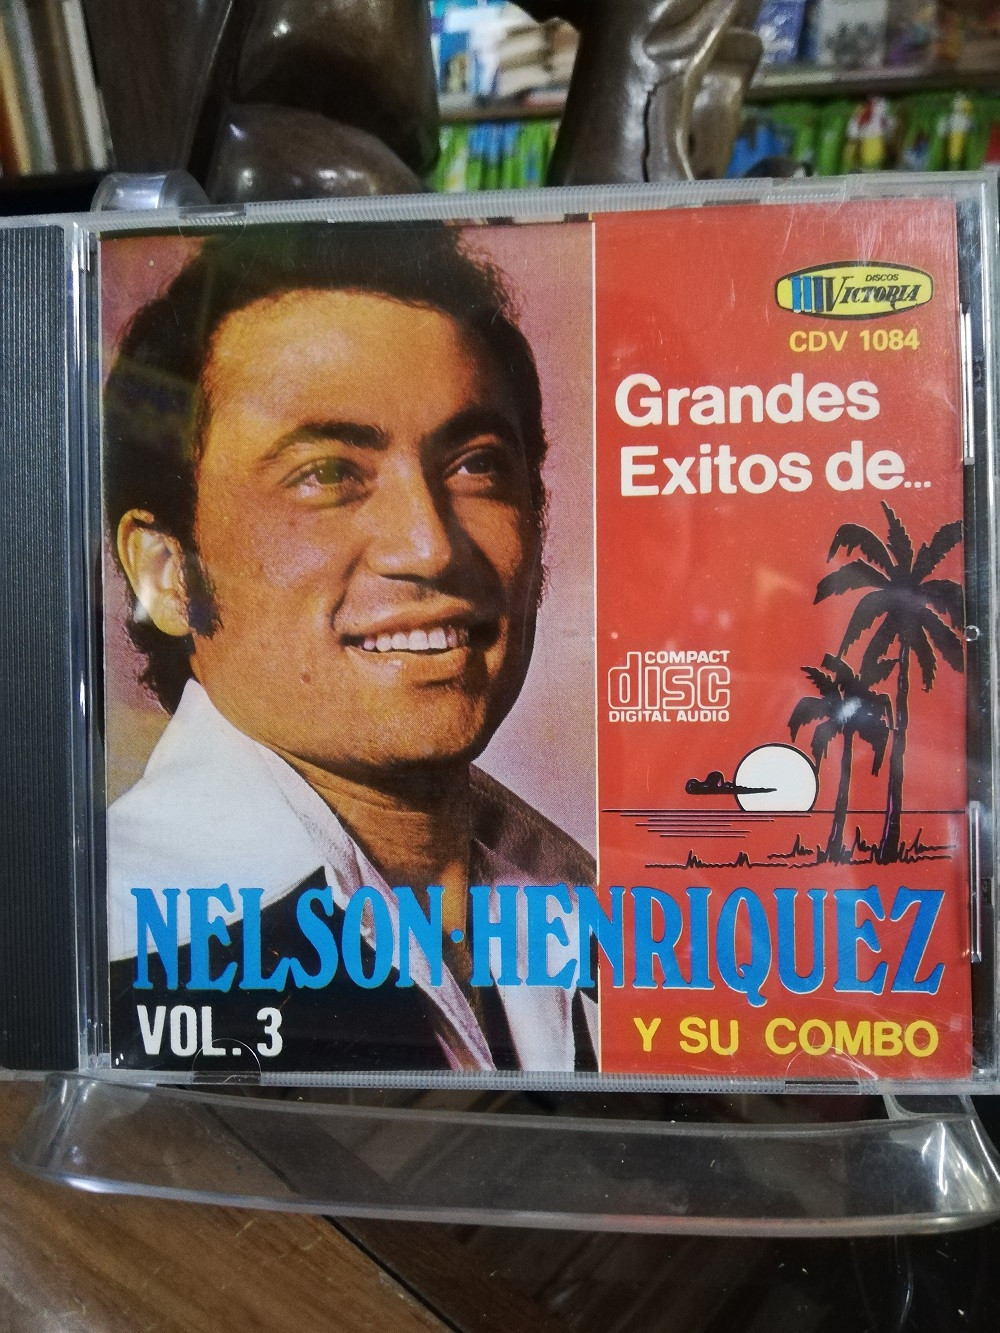 Imagen CD NELSON HENRIQUEZ Y SU COMBO - GRANDES EXITOS VOL. 3 1